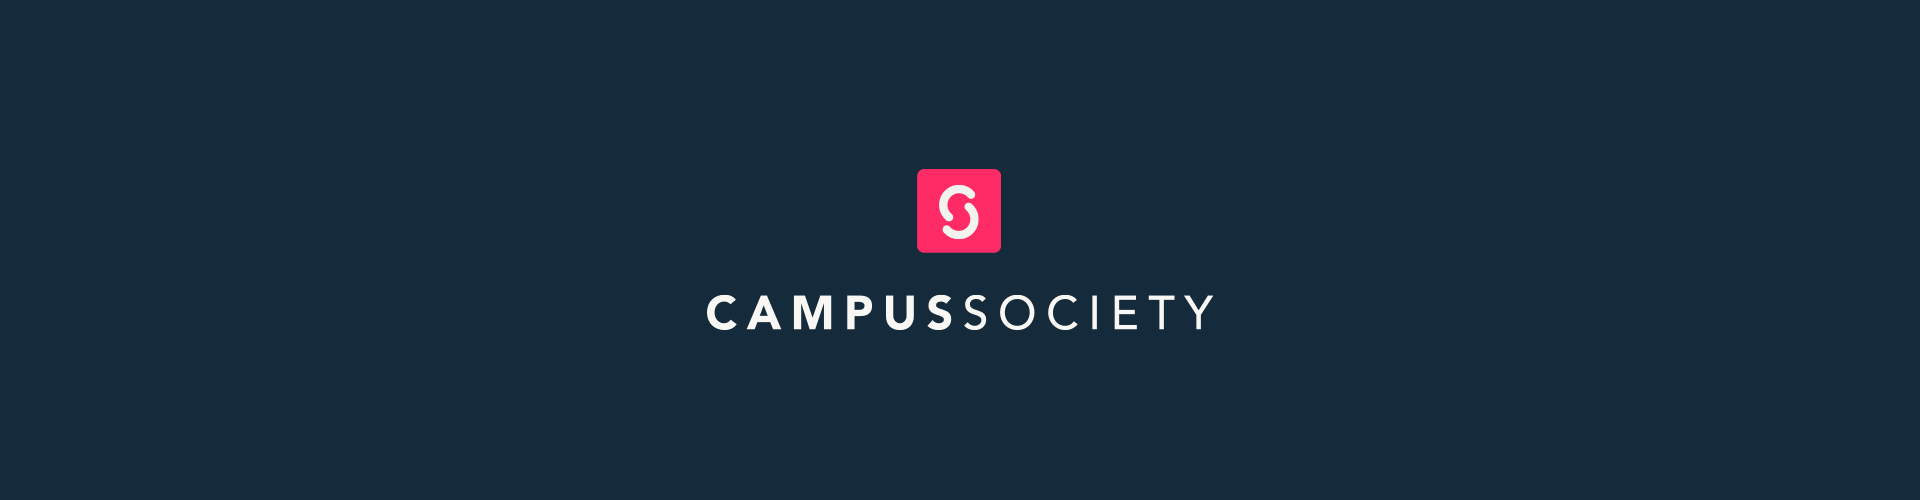 #StartUpSpotlight: Campus Society